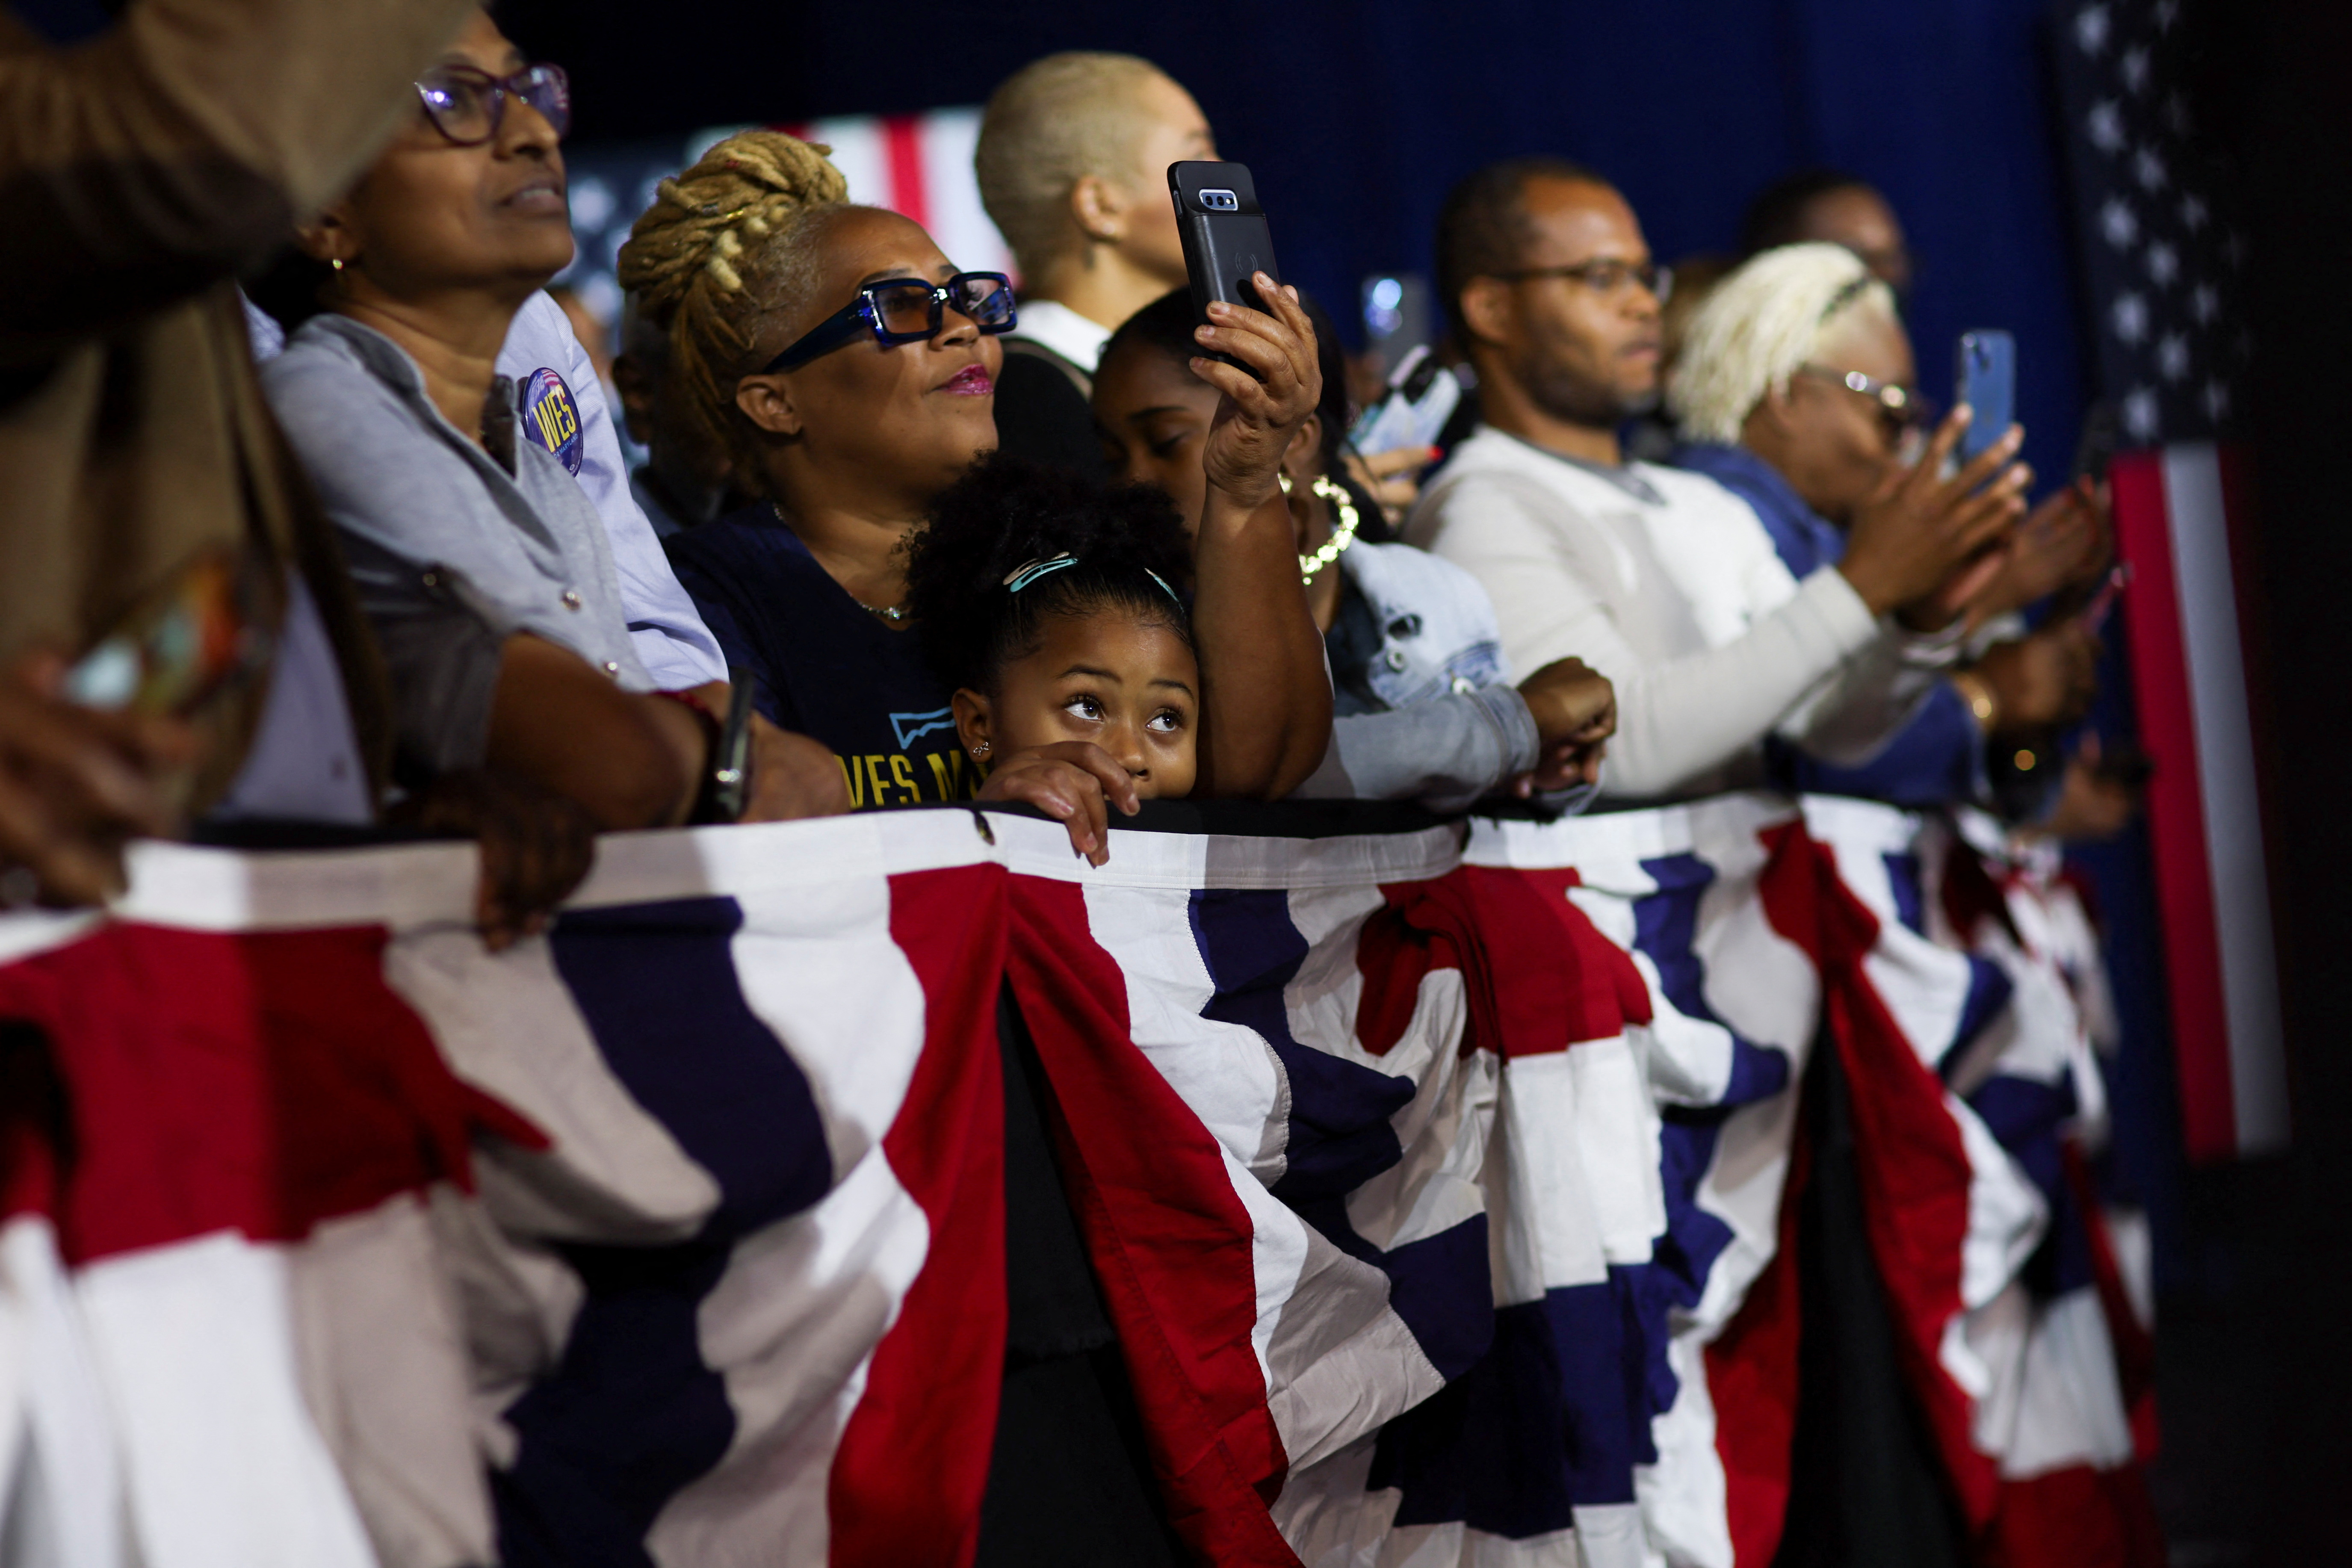 Escena de las celebraciones en Maryland, donde fue elegid el primer gobernador negro del estado, Wes Moore, y el tercer gobernador afroamericano en la historia de Estados Unidos. REUTERS/Leah Millis